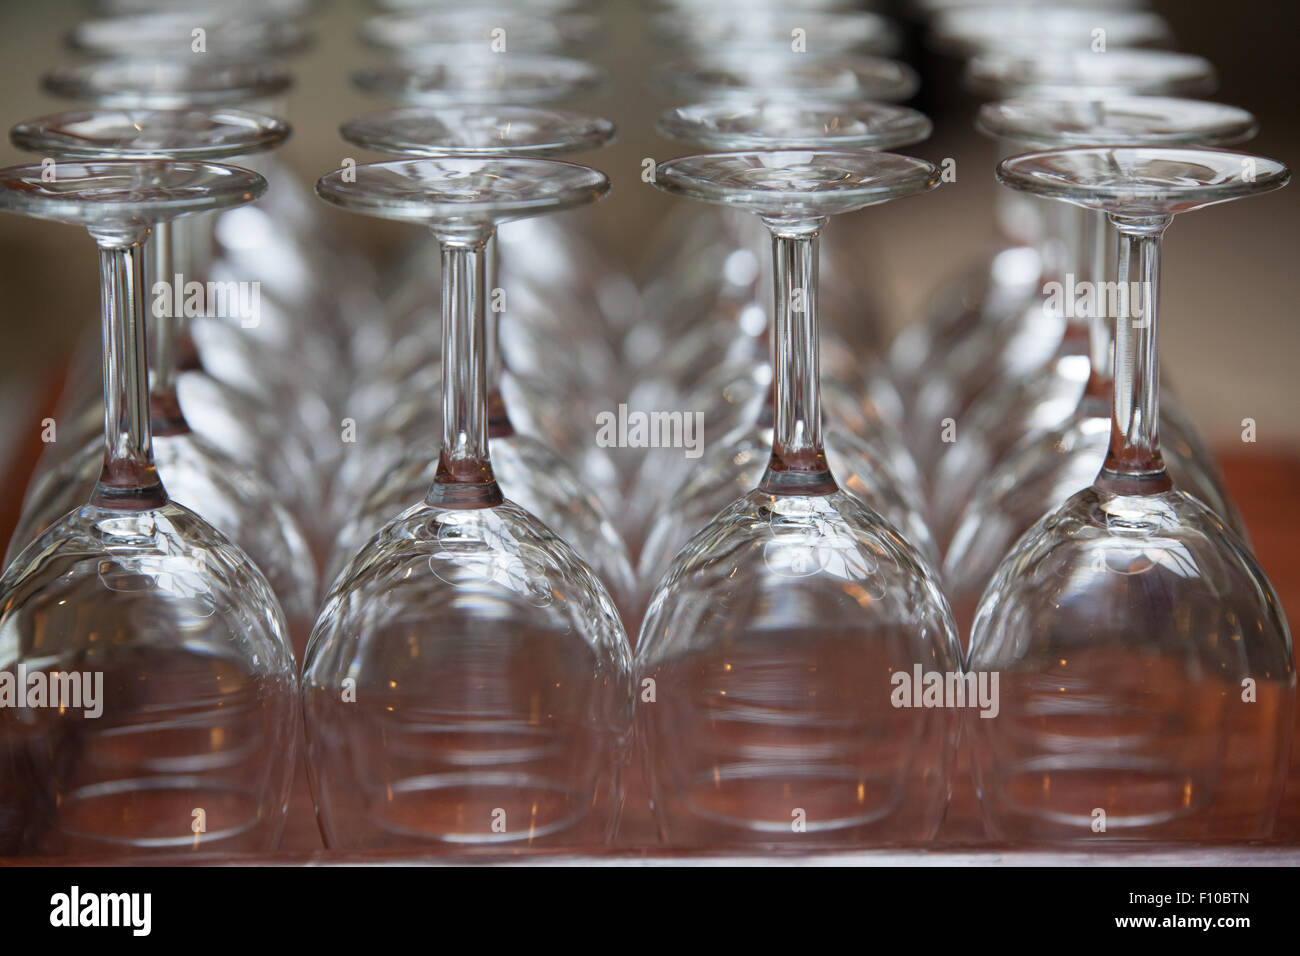 empty wine glass upside down Stock Photo